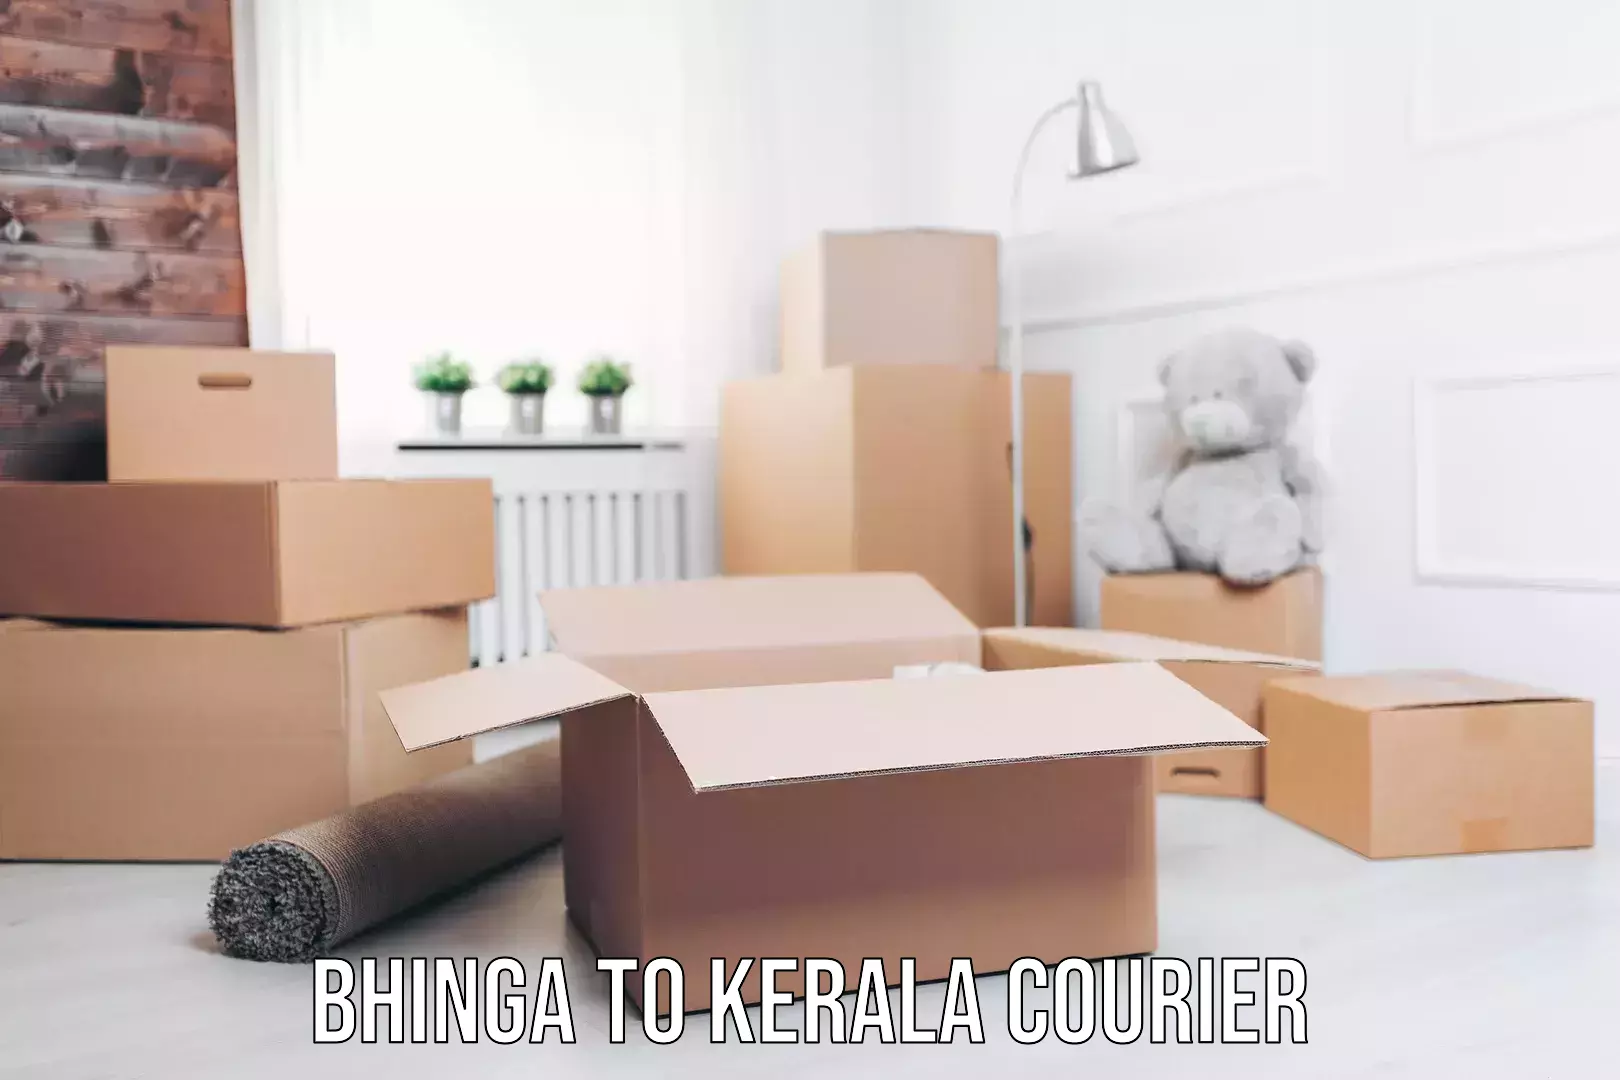 Bulk courier orders Bhinga to Kerala